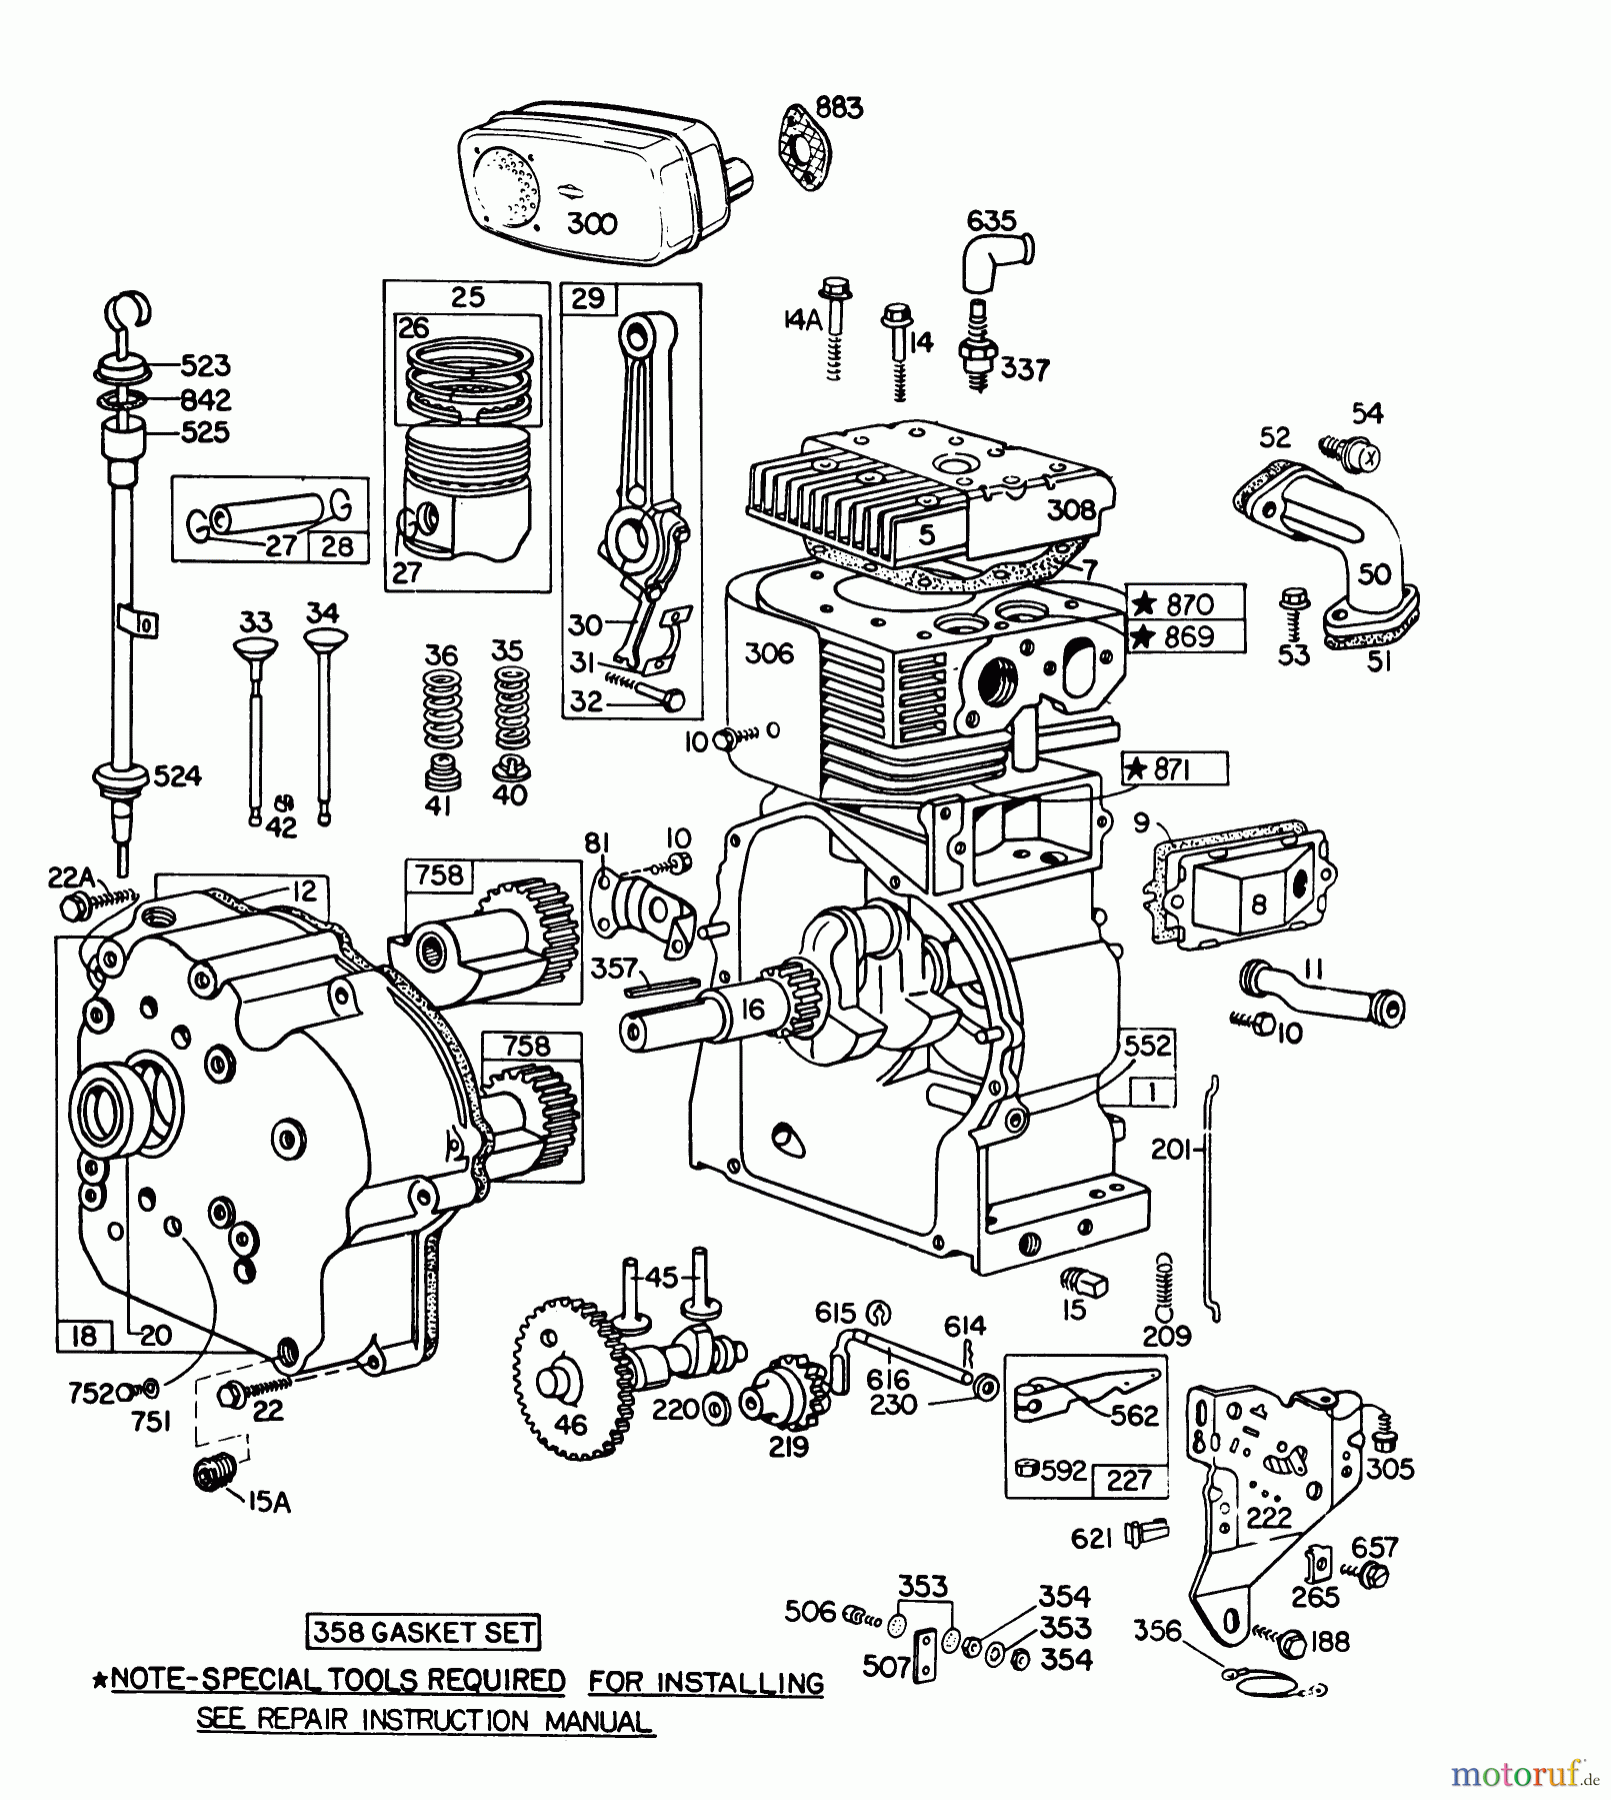  Toro Neu Snow Blowers/Snow Throwers Seite 1 38095 (1132) - Toro 1132 Snowthrower, 1982 (2000001-2999999) ENGINE BRIGGS & STRATTON MODEL NO. 252416-0190-01 #1